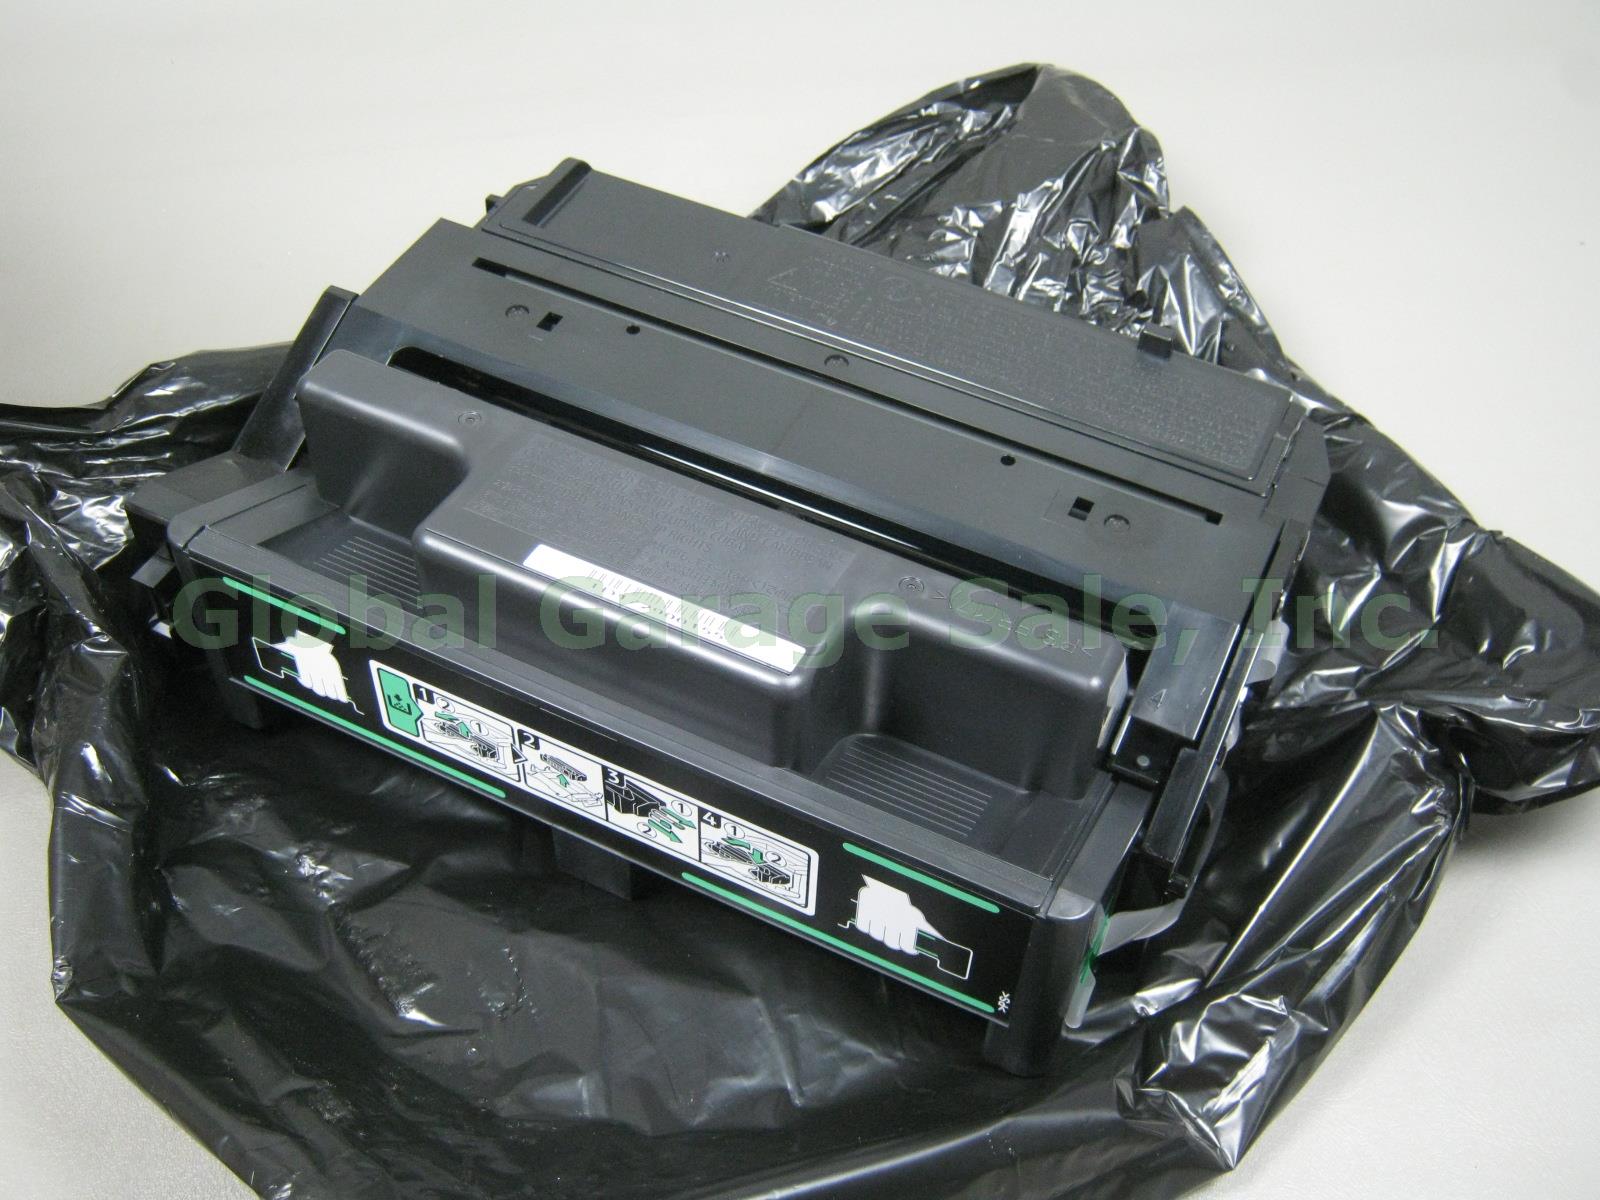 Ricoh Print Cartridge SP4100 Type 120 Black M889-17 406997 For SP 4100N 4110N NR 3